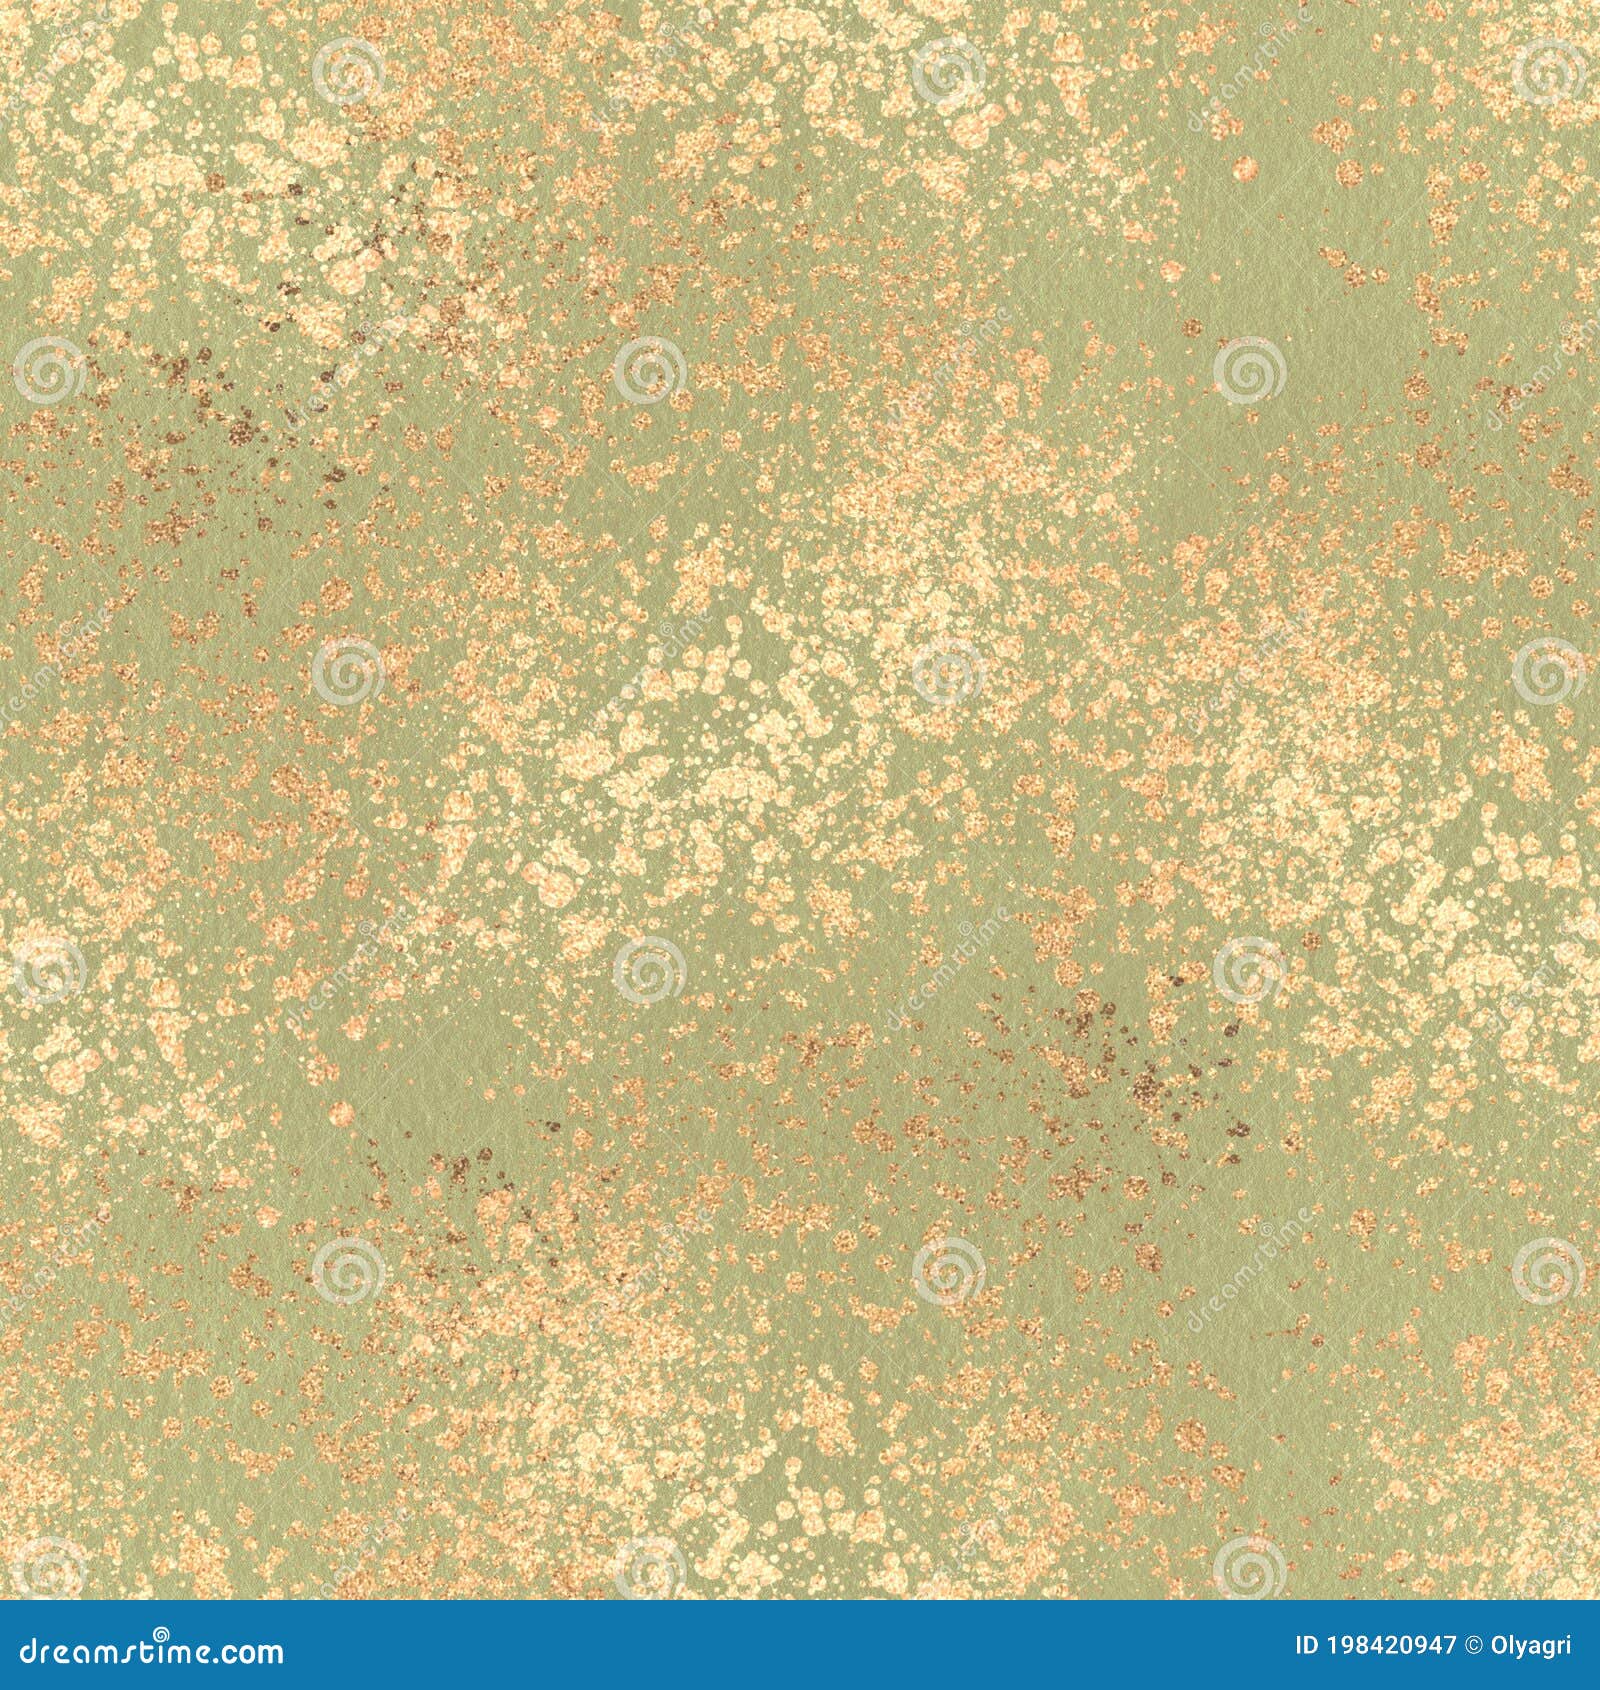 Gold Grunge Texture. Seamless Glitter Pattern Stock Illustration ...